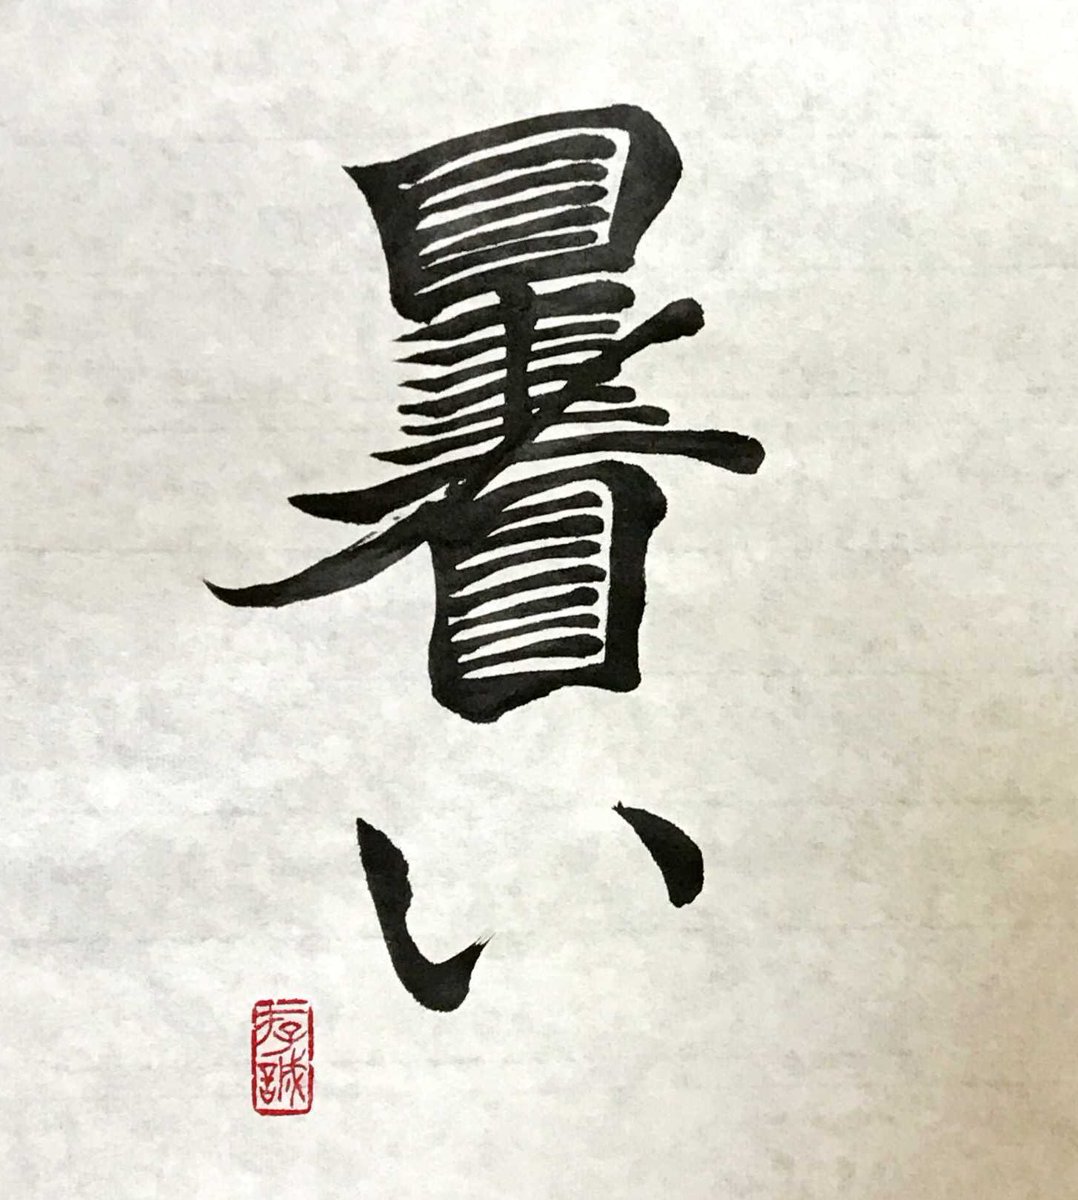 読み あっっっっっっっっつい という創作漢字を作ったけど本当に暑そうで夏を感じすぎる Togetter